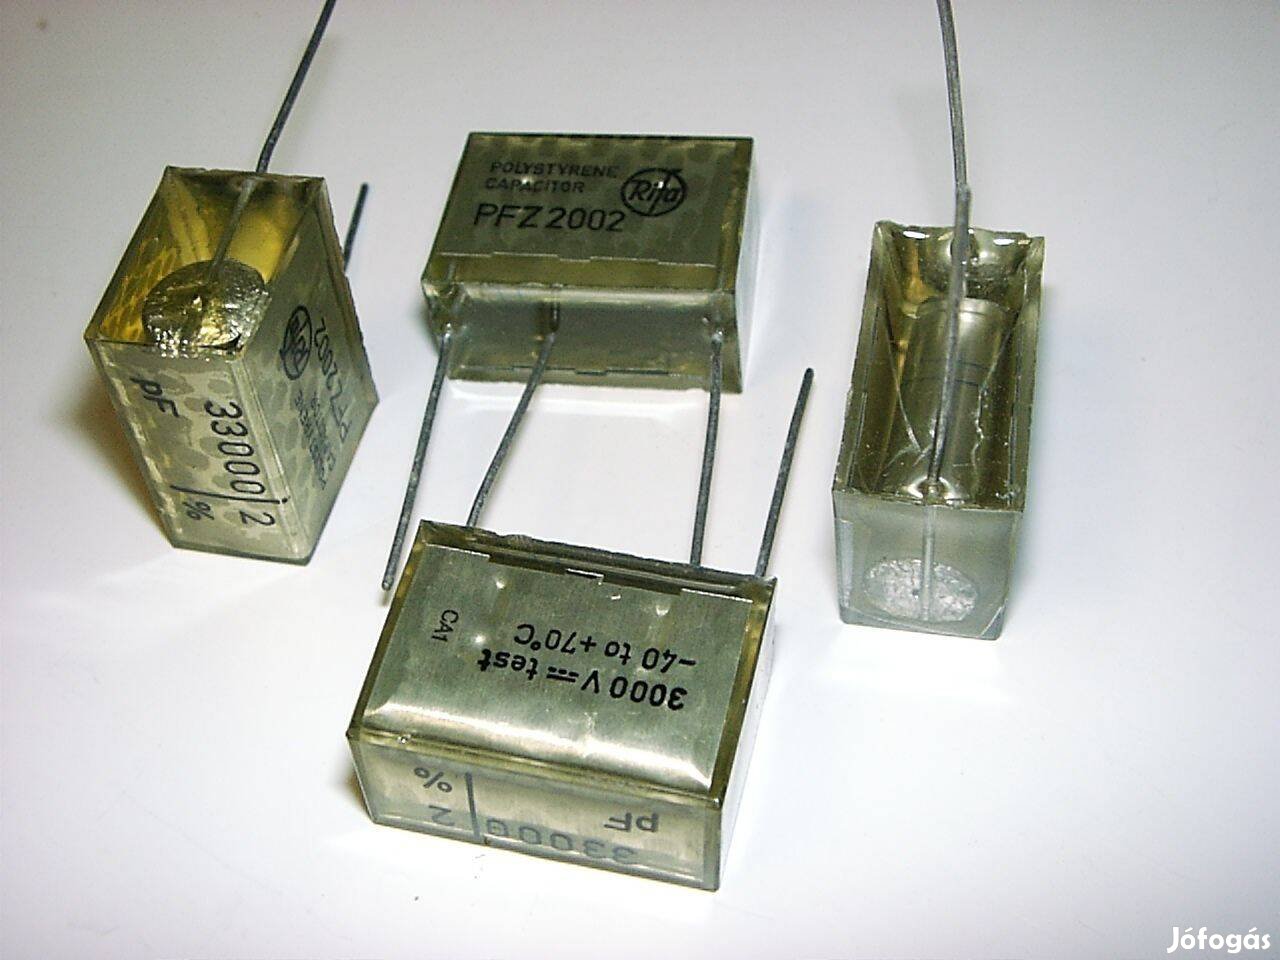 Rifa kondenzátor, 33nF 3000V , Pfz2002, stiroflex,polystyrene